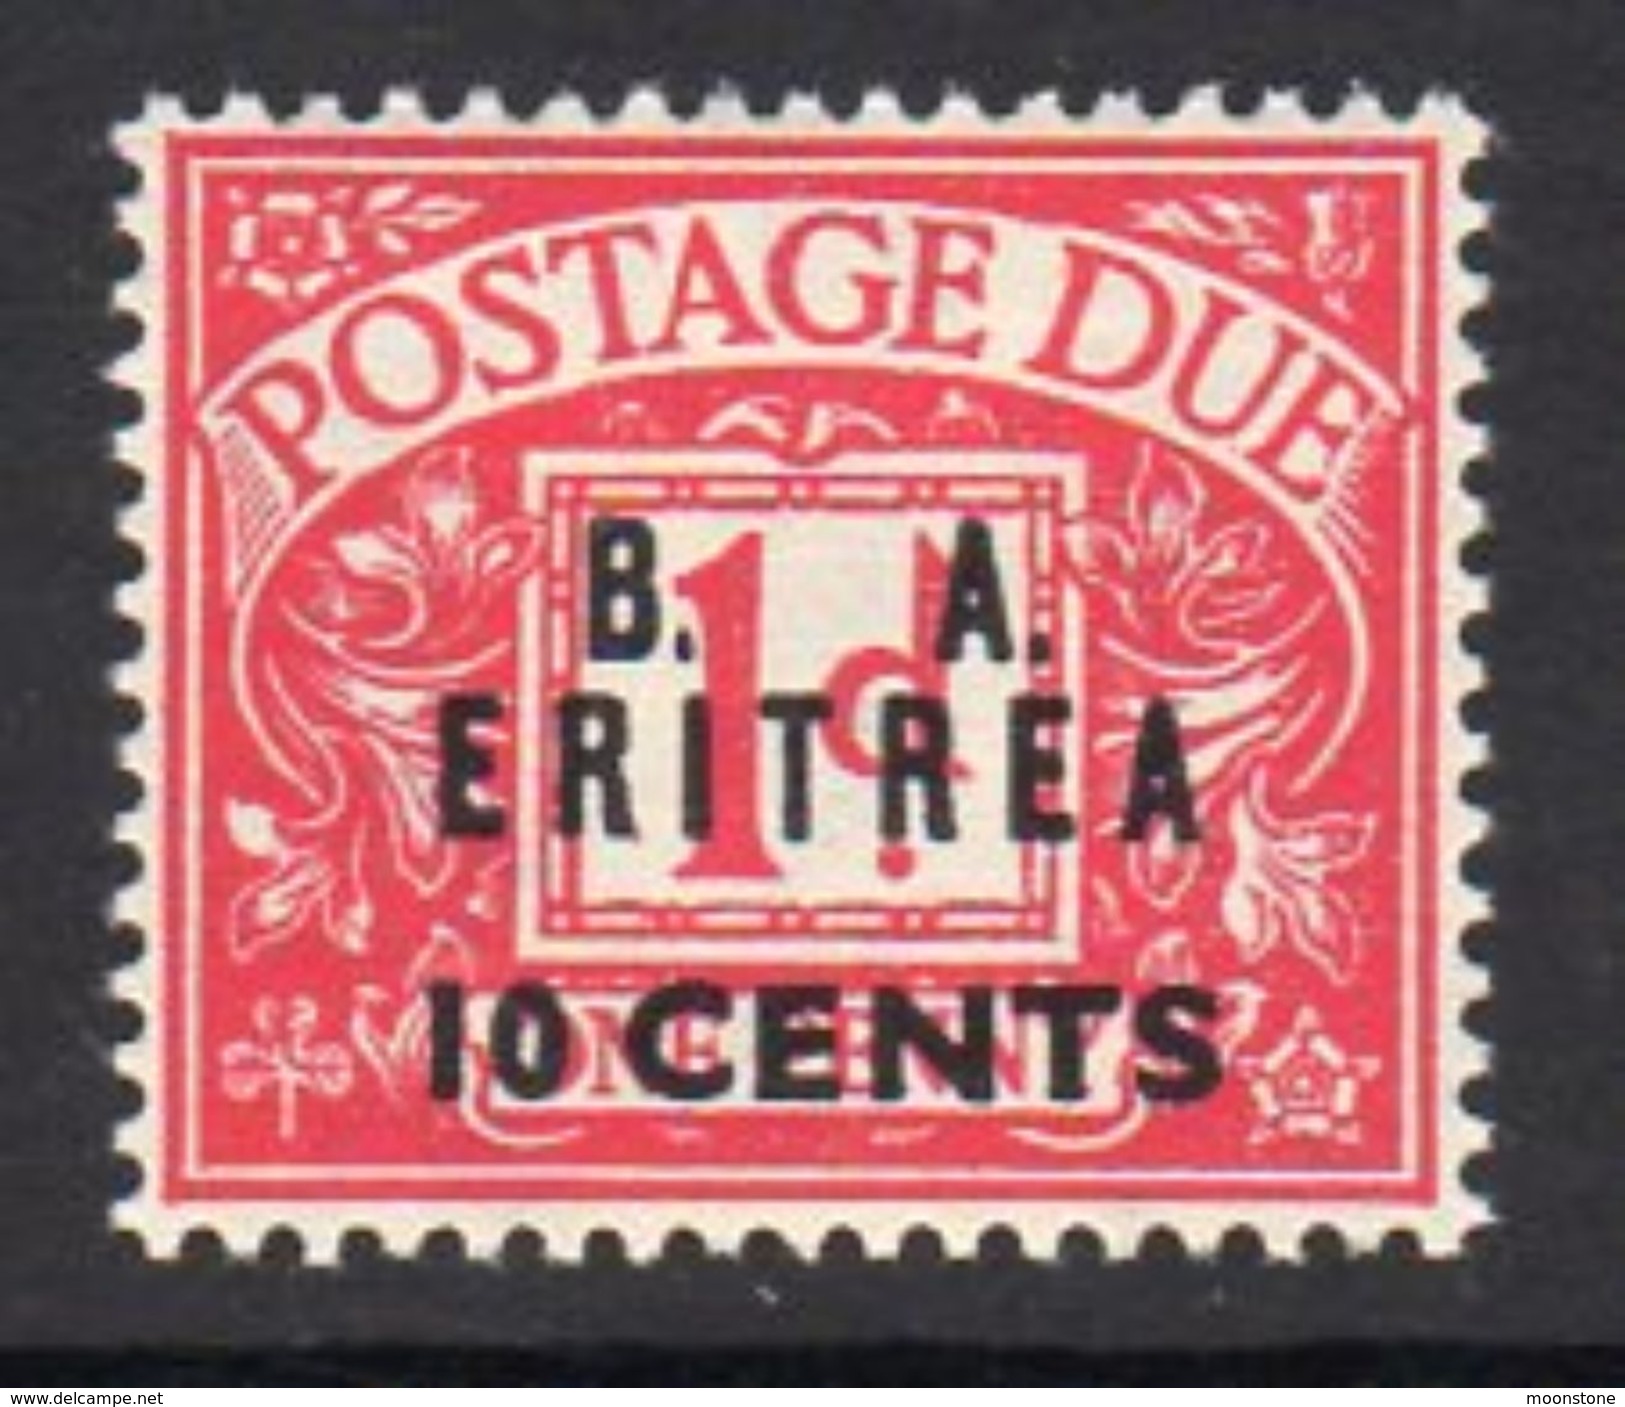 BOIC, BA Eritrea 1950 10c. On 1d Postage Due Overprint On GB, Hinged Mint, SG ED7 (A) - Eritrée